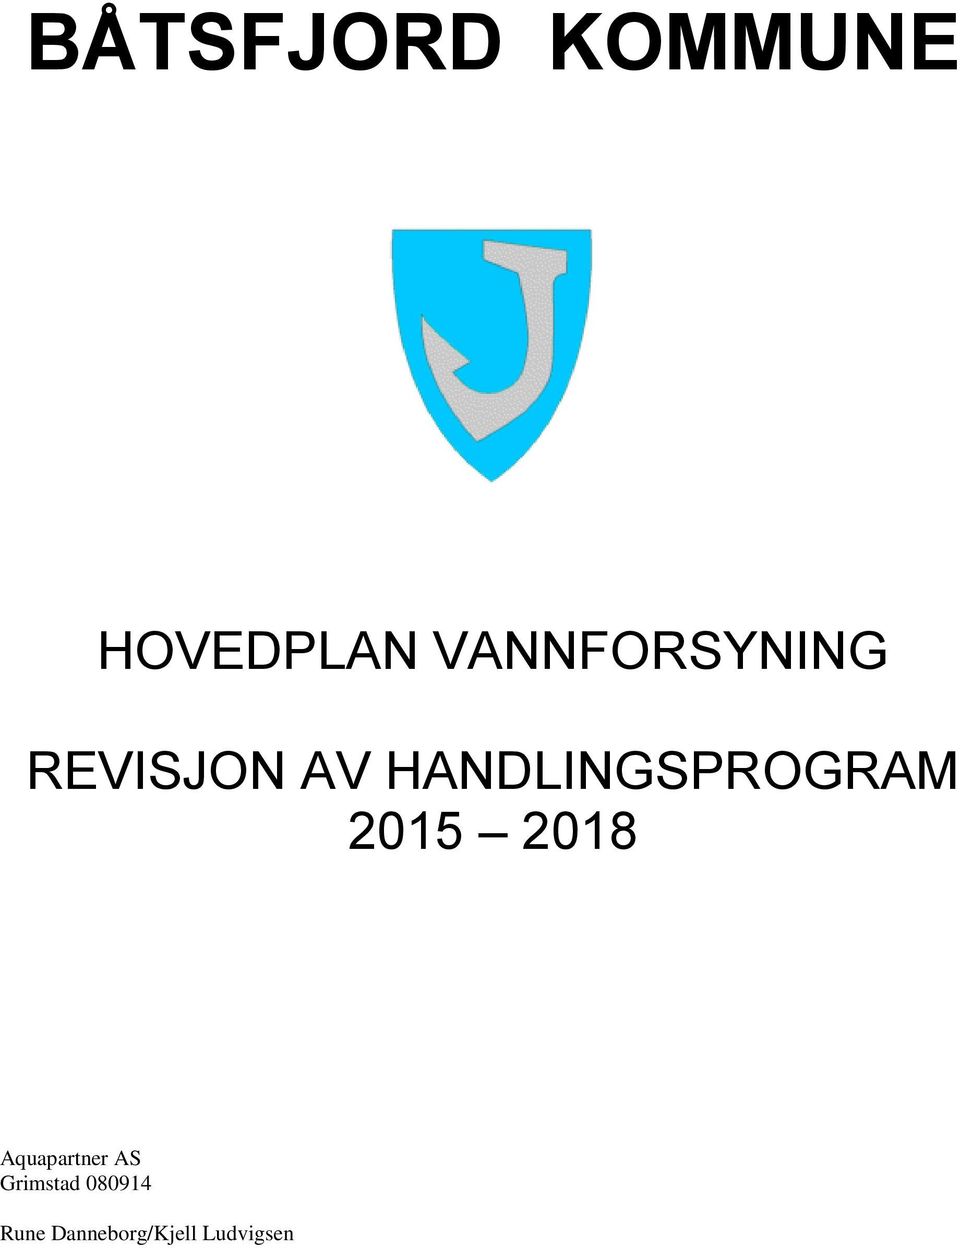 HANDLINGSPROGRAM 2015 2018